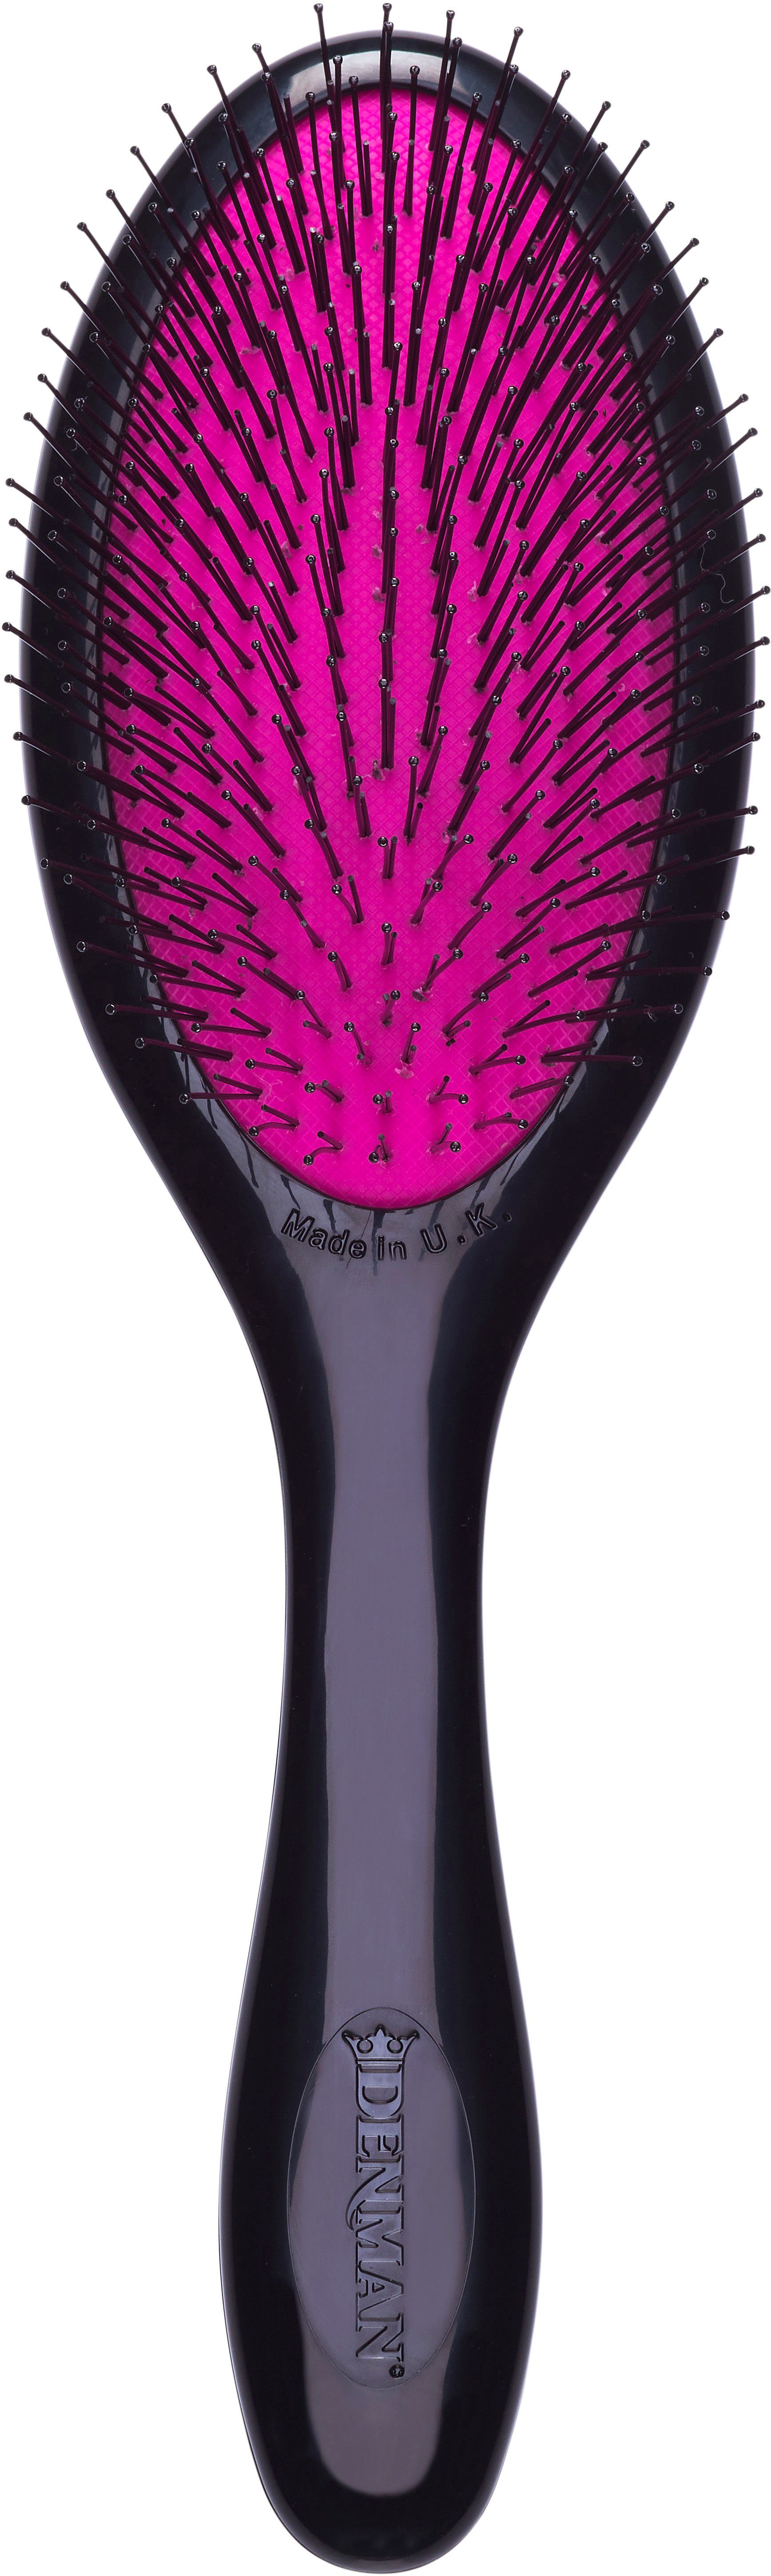 Haarbürste Gentle, schwarz-pink speziell für Tamer Entwirrungsbürste Kinderhaar feines und Tangle Haar DENMAN D93M